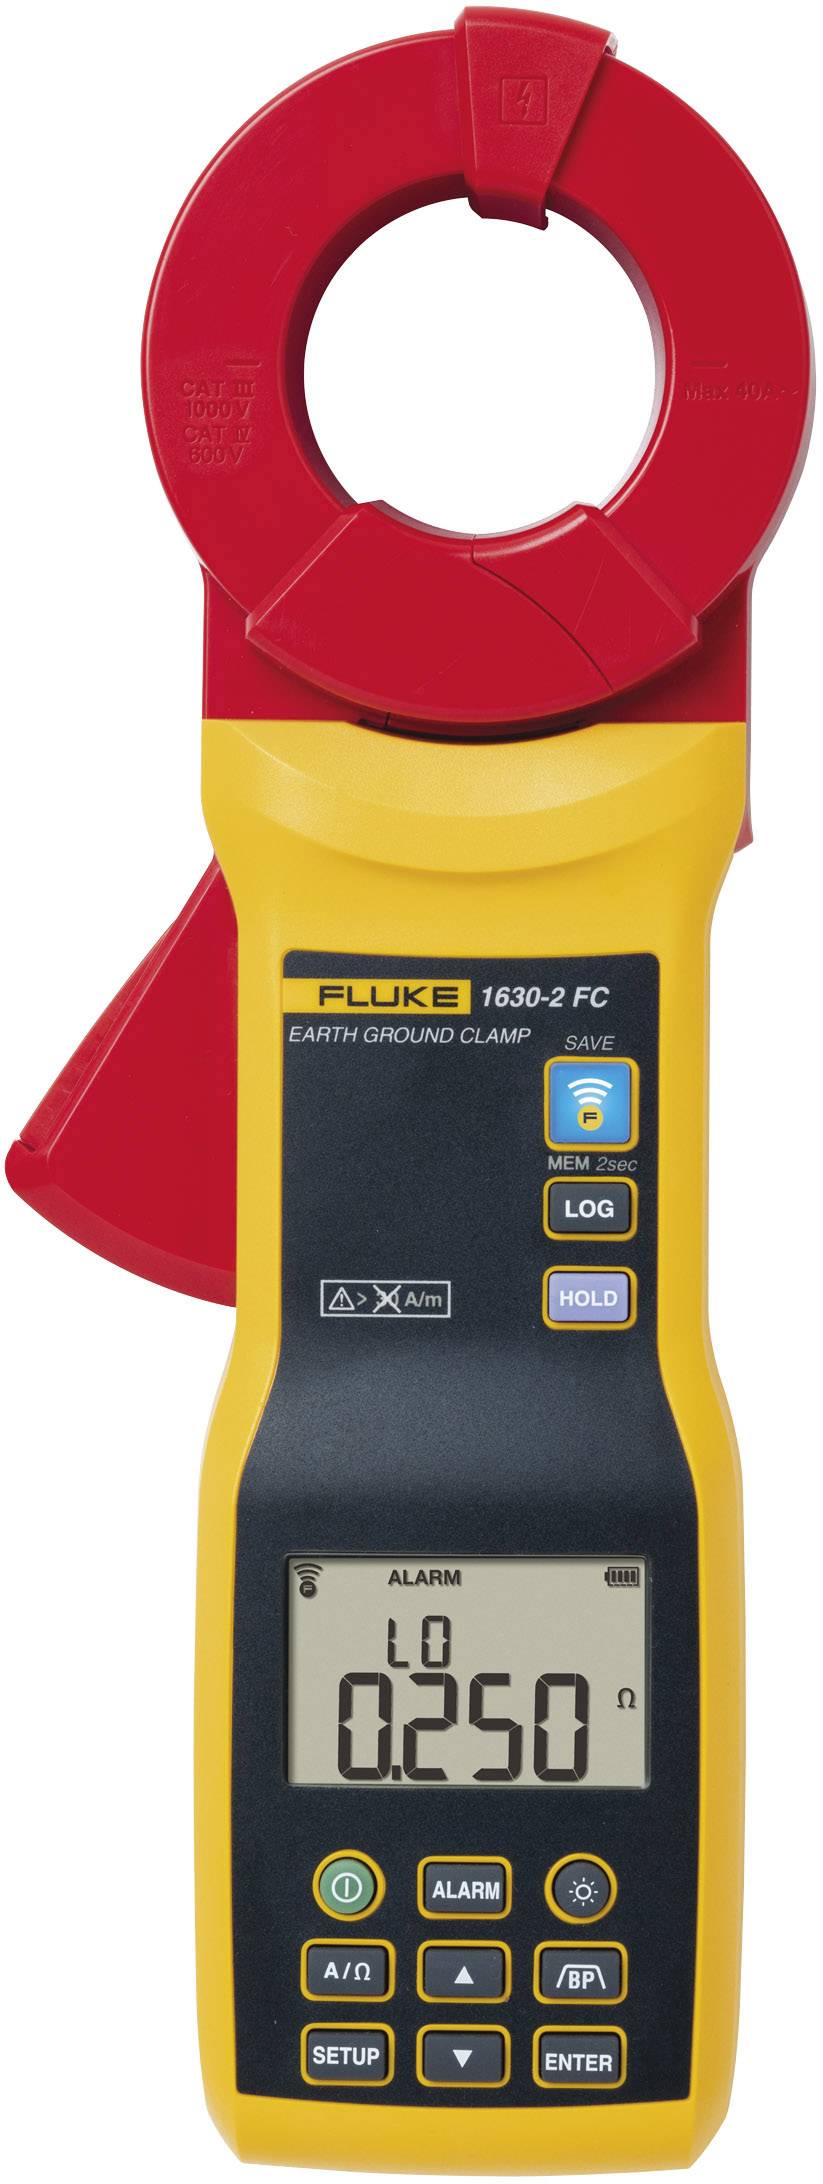 FLUKE Erdungsmessgerät Fluke FLUKE-1630-2 FC Kalibriert nach Werksstandard